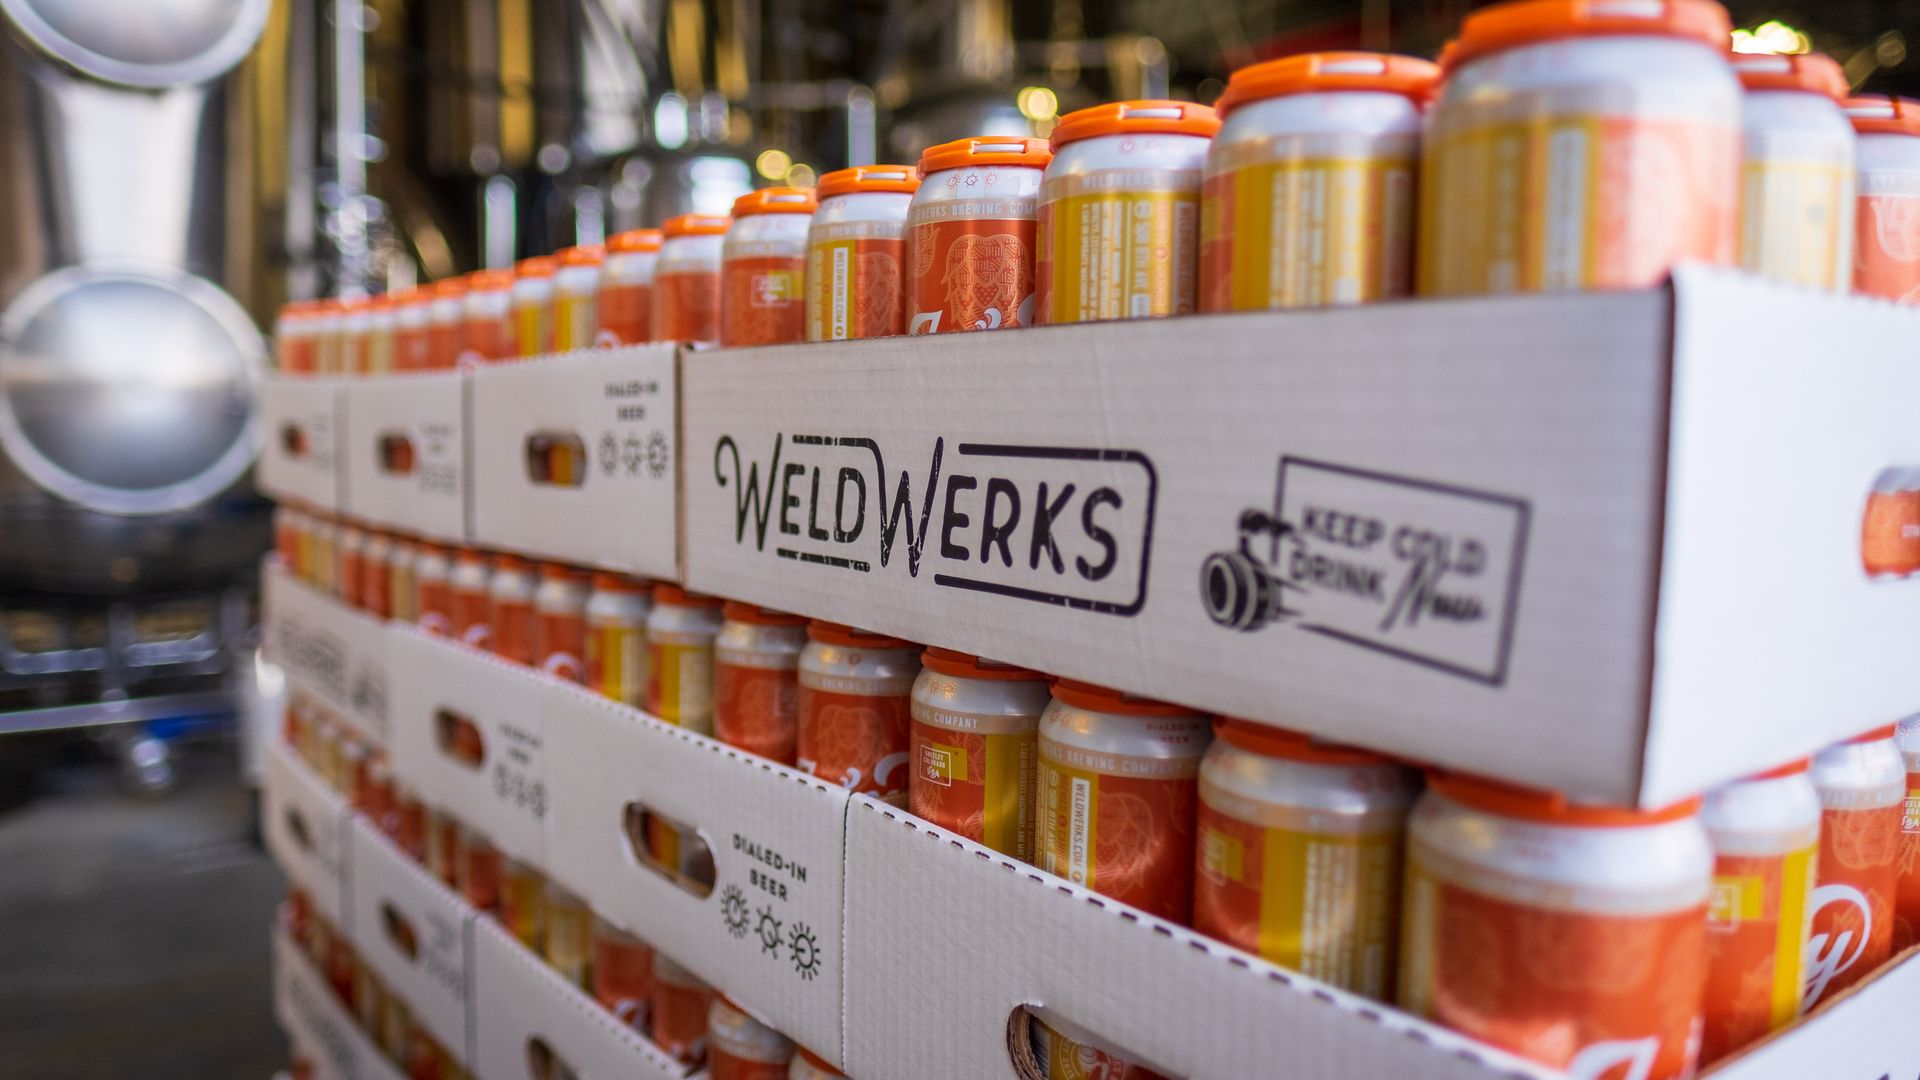 Canned WeldWerks beer six-packs in cardboard boxes with orange plastic holders